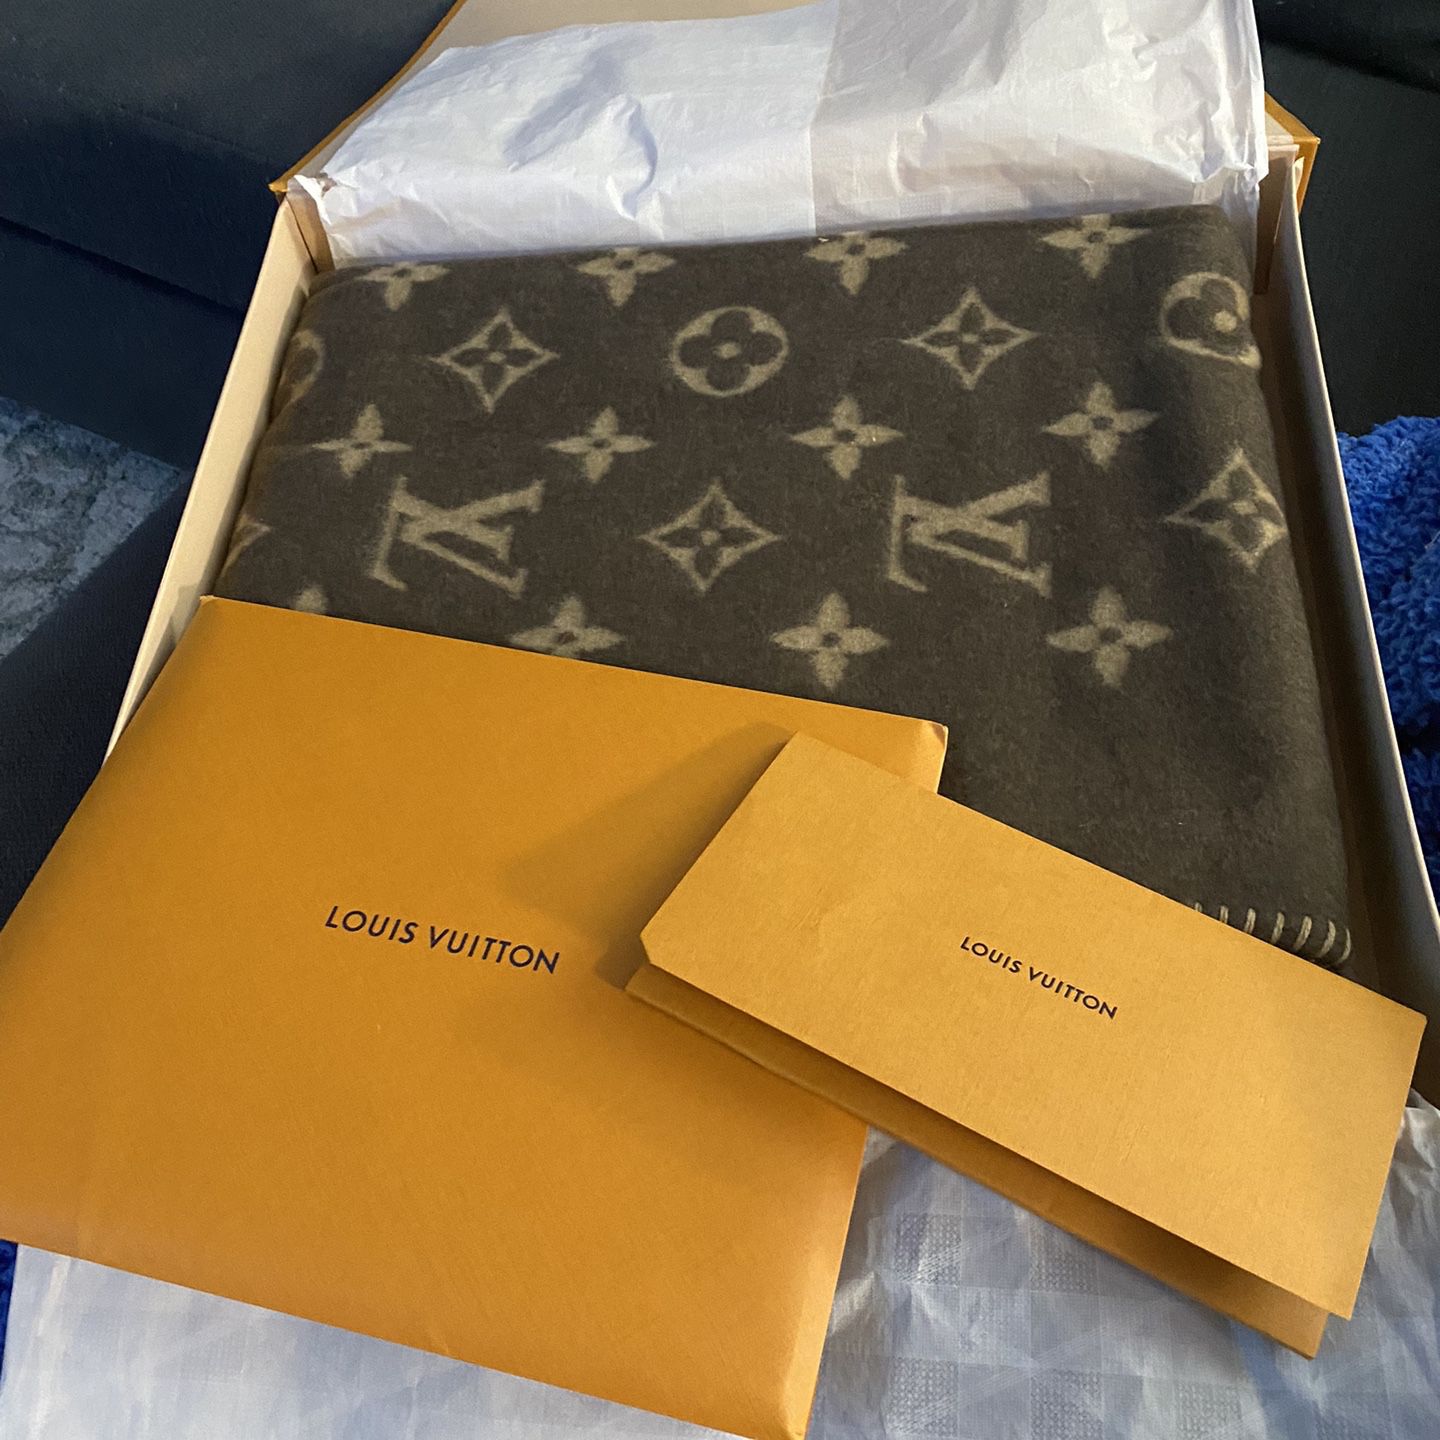 100% Authentic Louis Vuitton Blanket